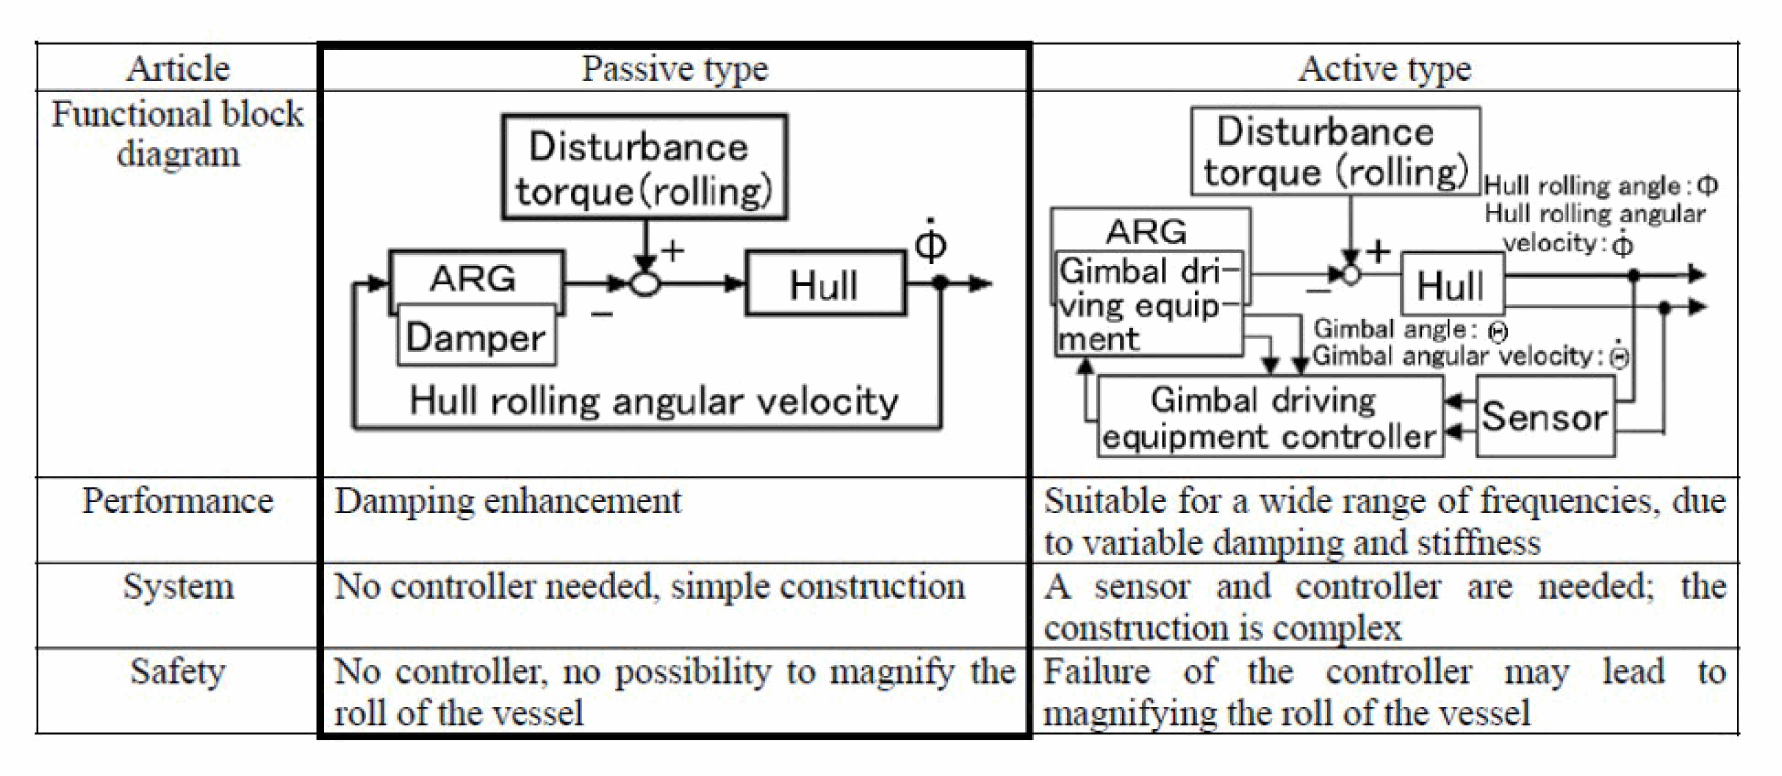 Gyroscopic effect on ship pdf